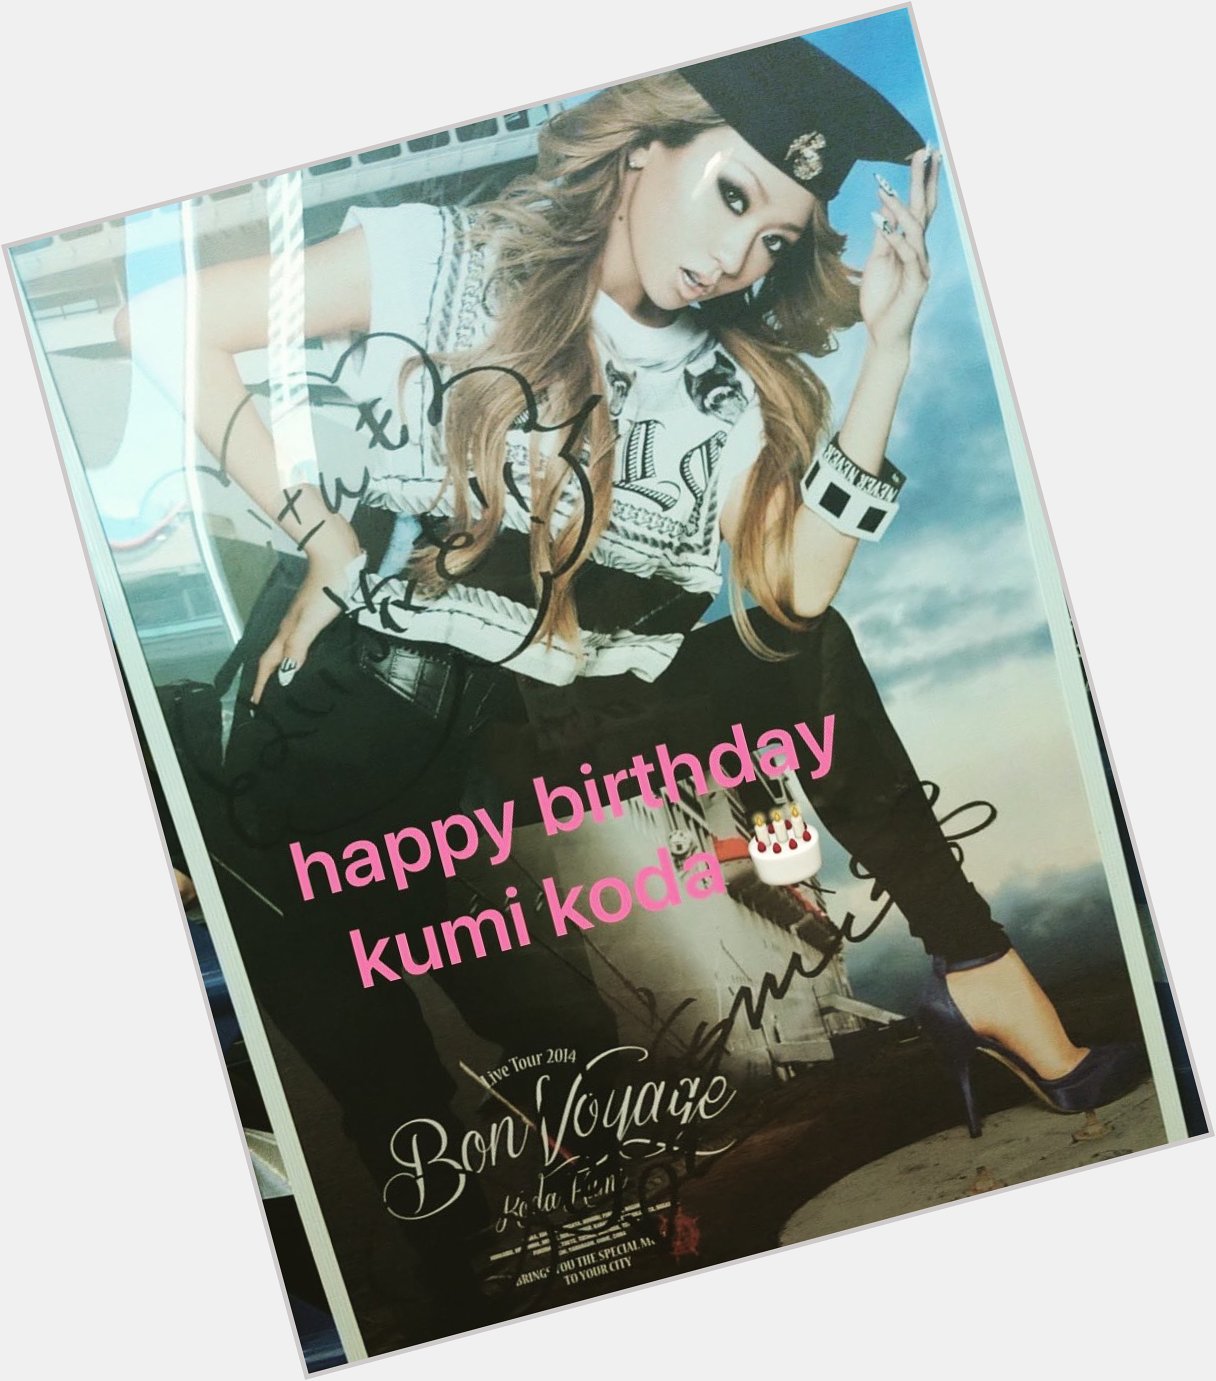 Happy birthday kumi koda      